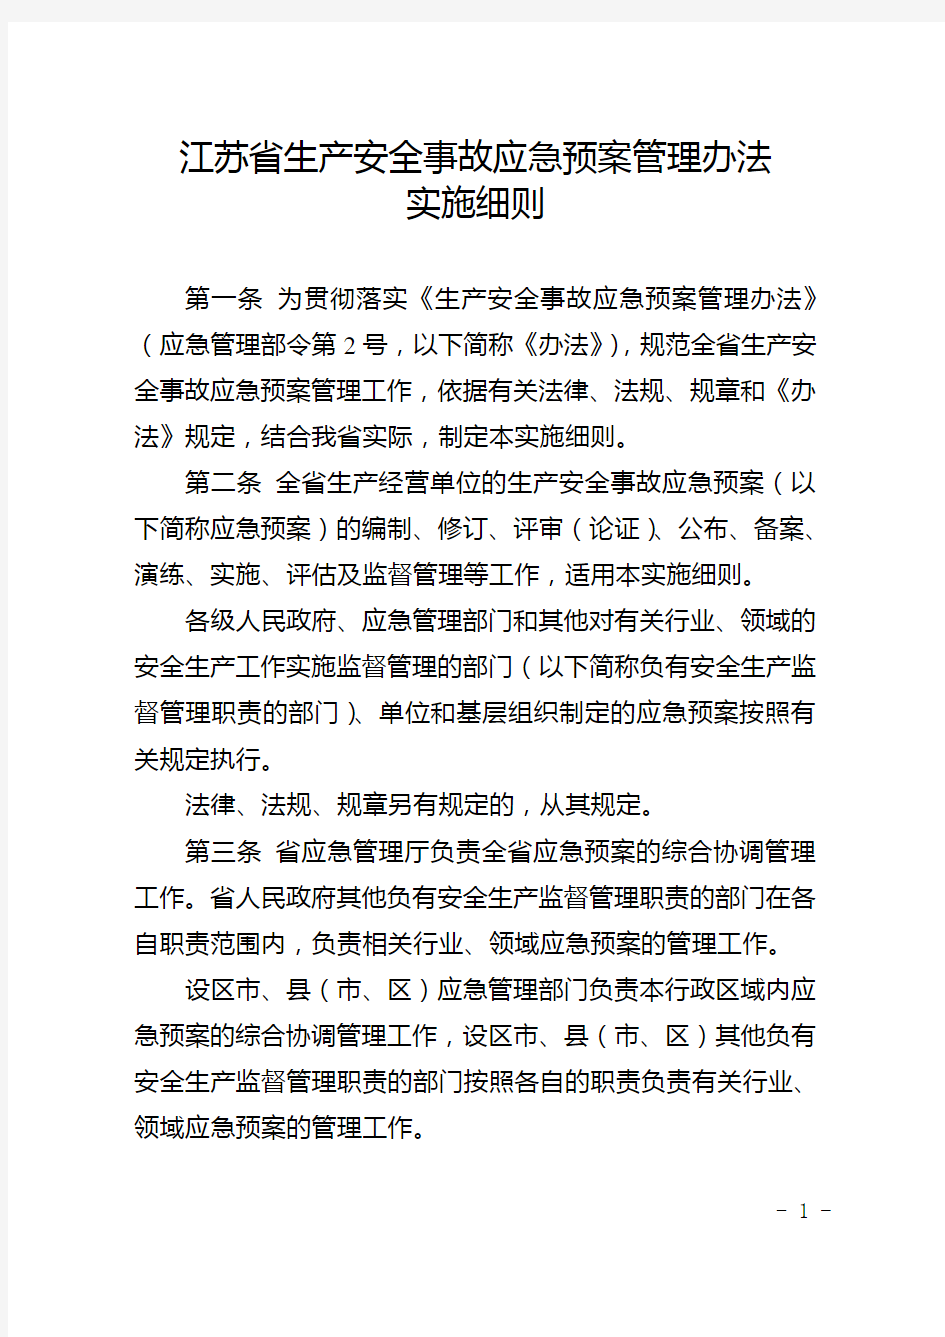 江苏省生产安全事故应急预案管理办法实施细则